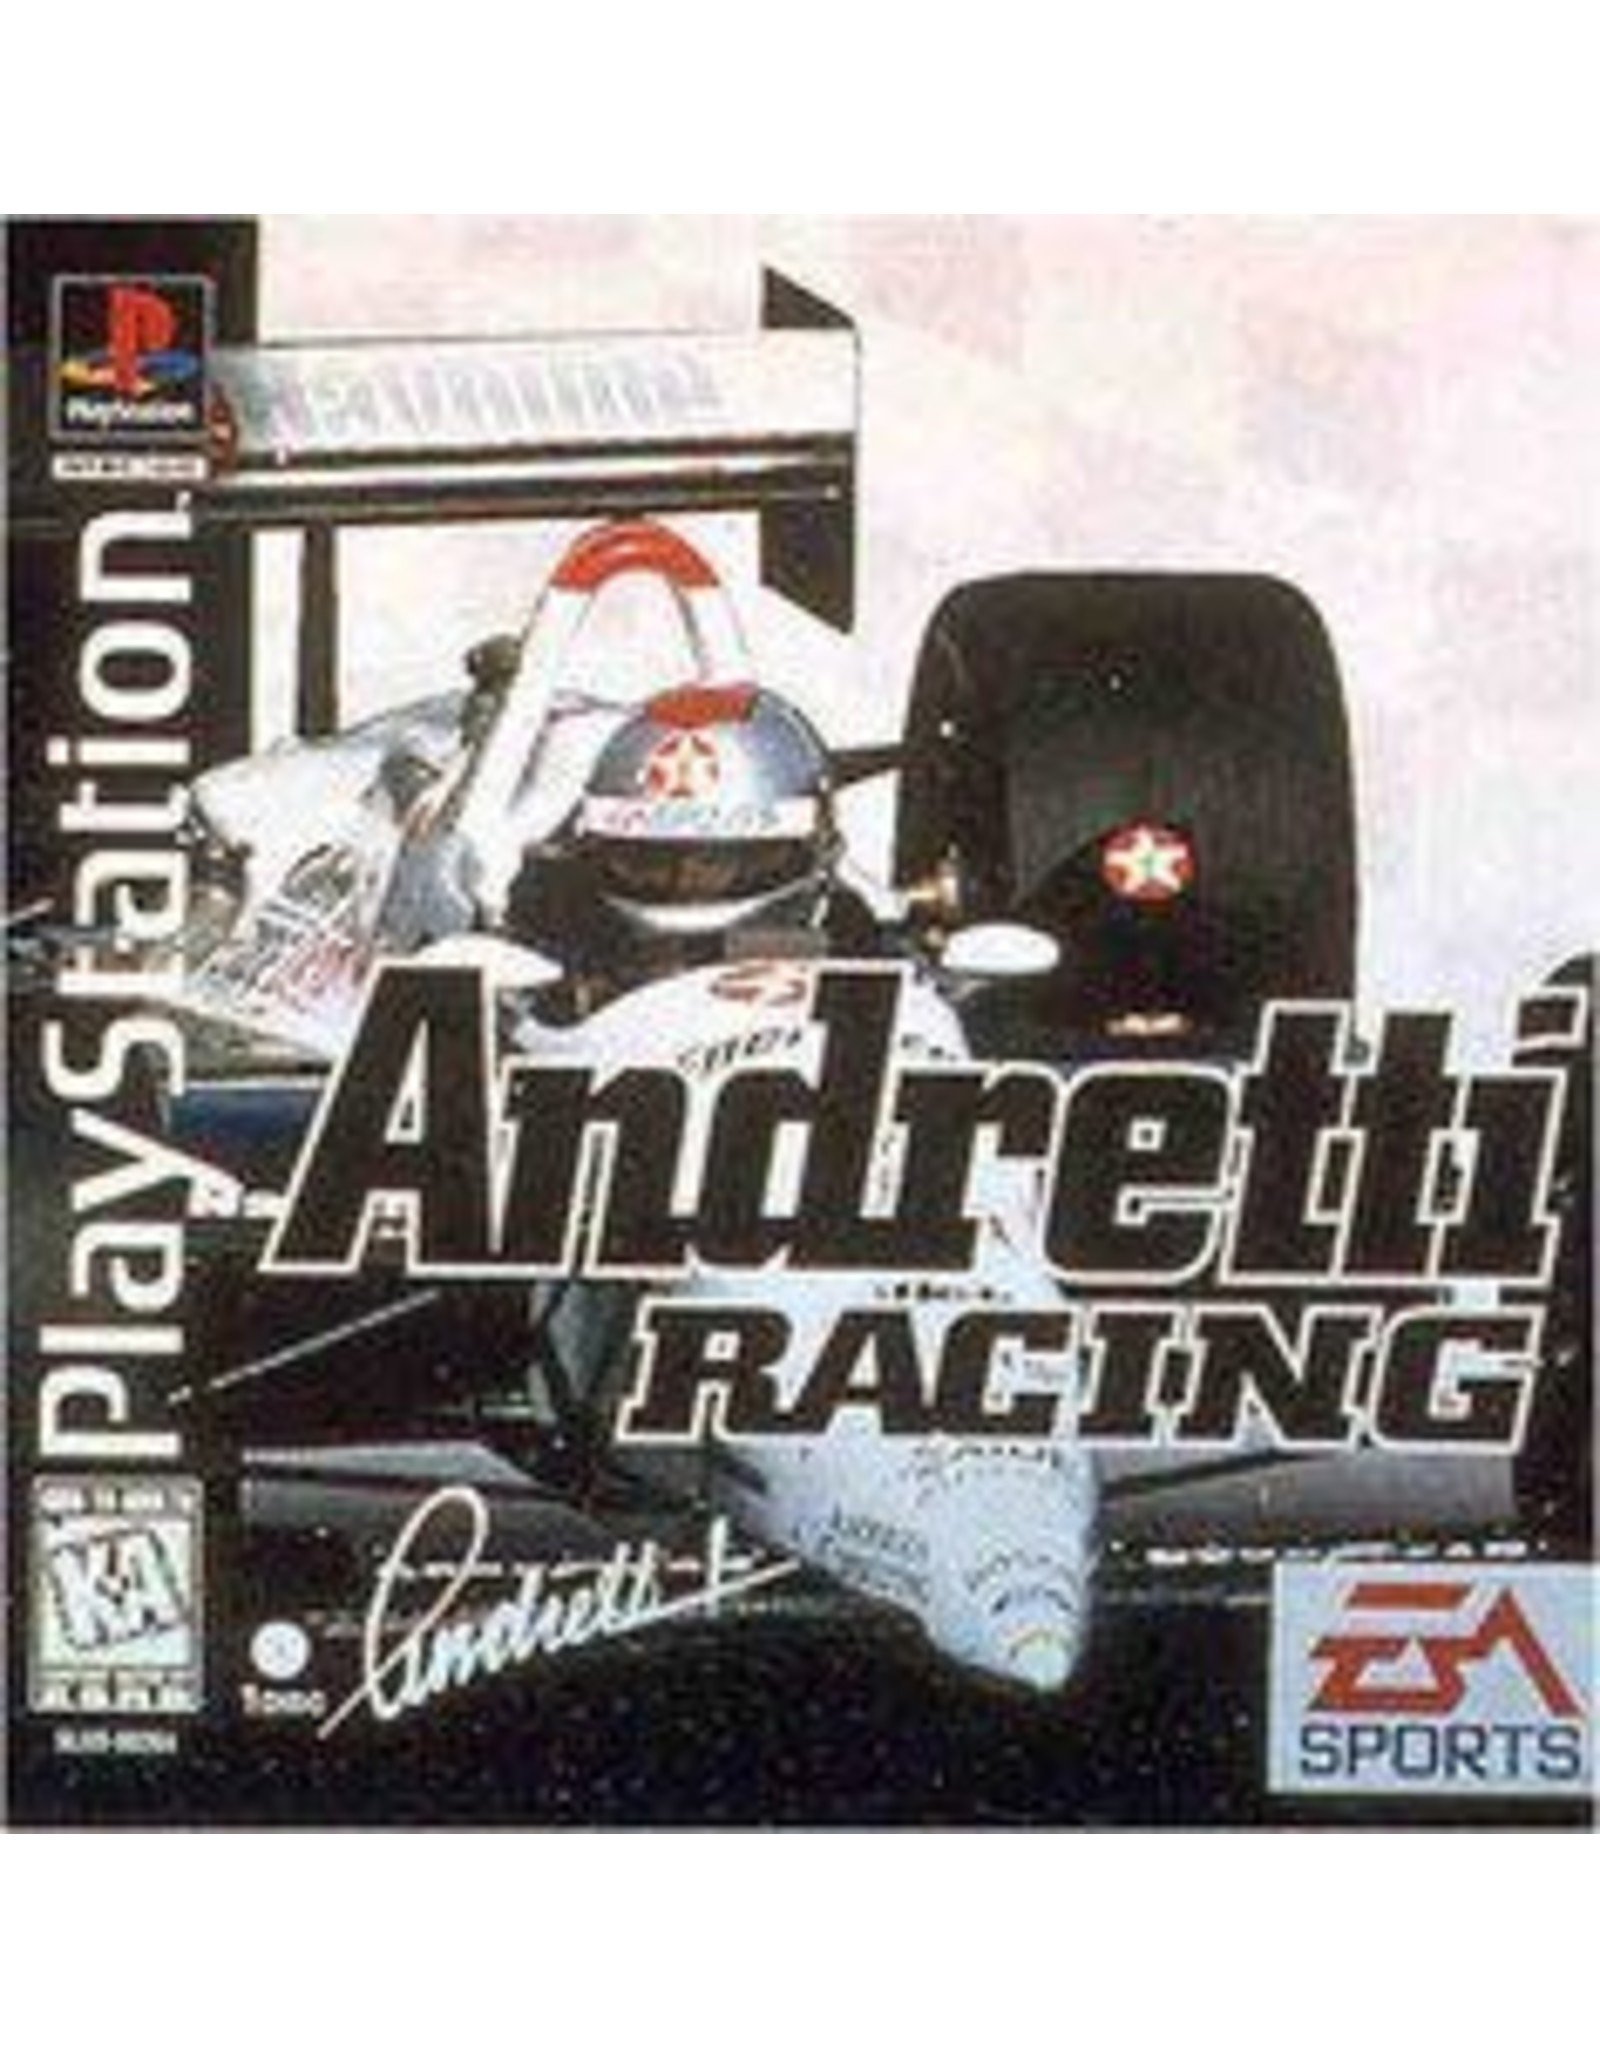 Playstation Andretti Racing (Boxed, No Manual)